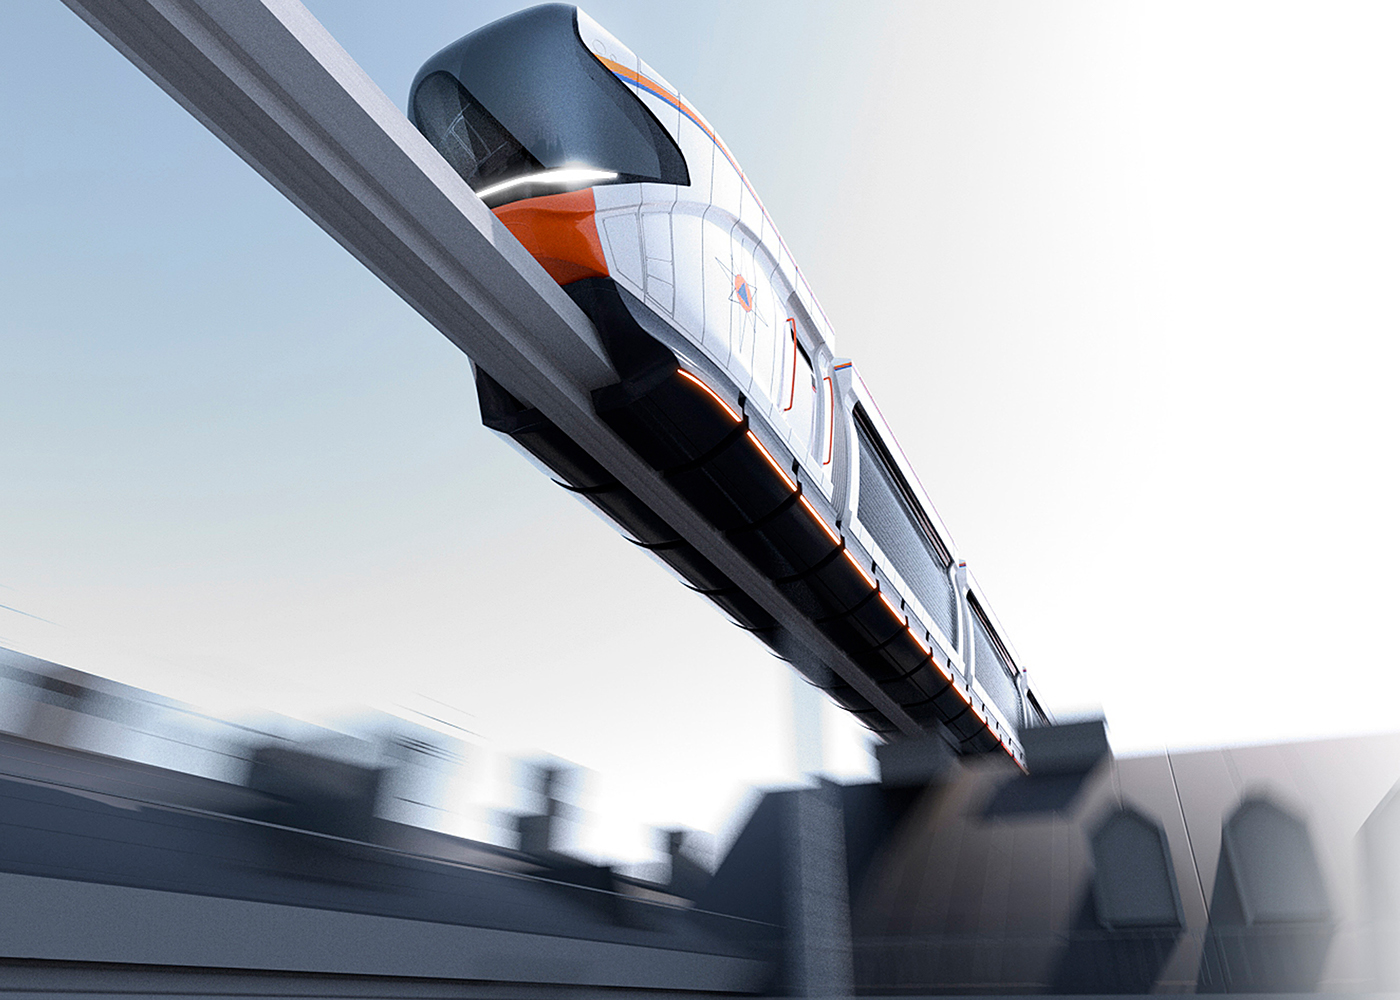 monorail train,单轨列车,铁路